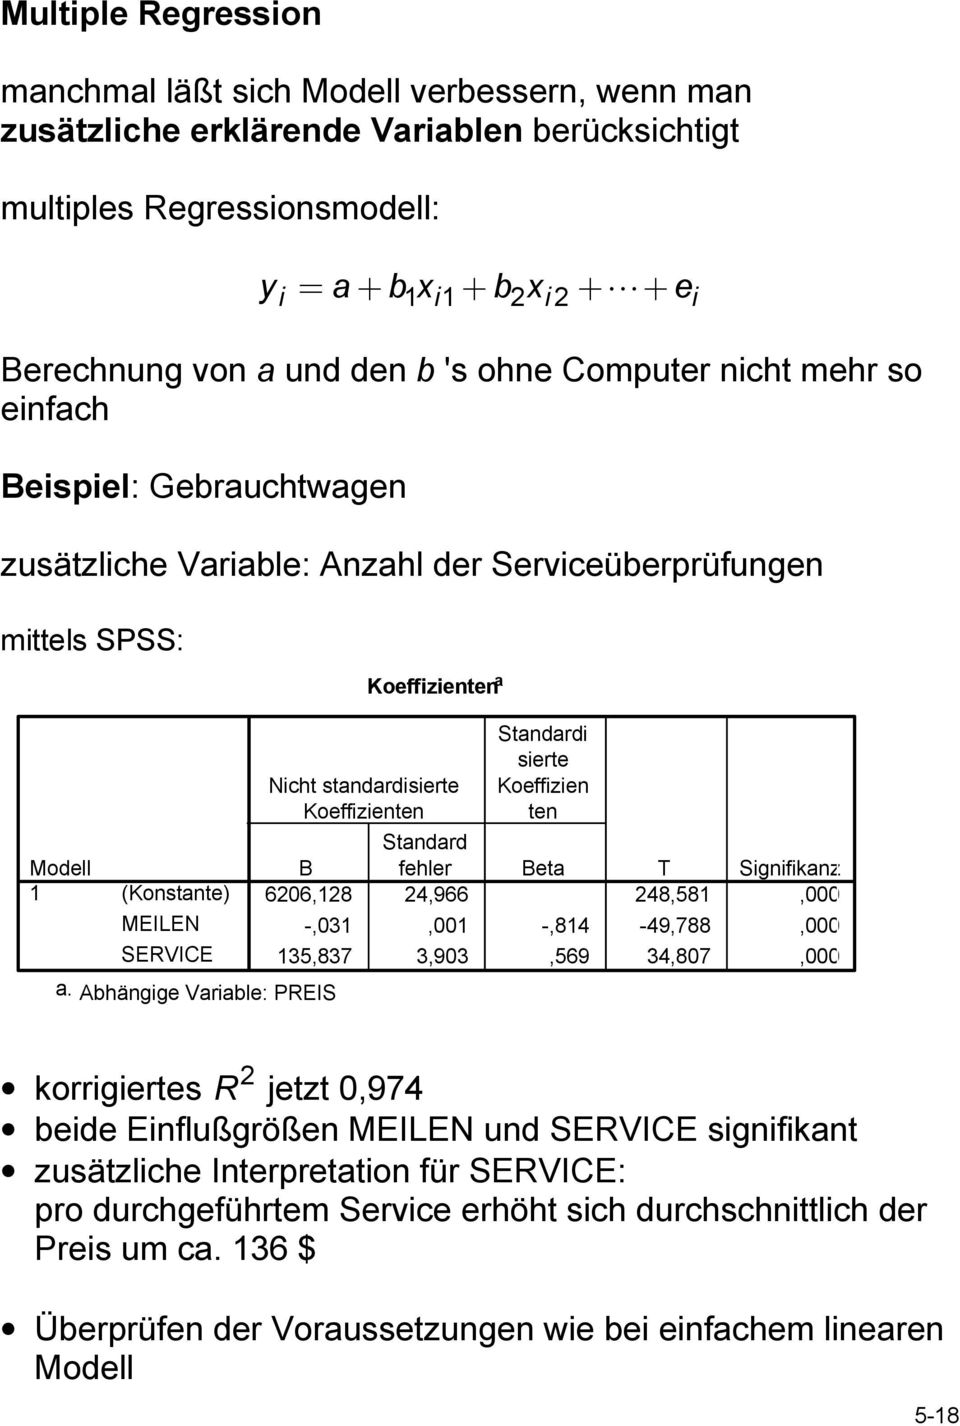 Abhängge Varable: PREIS Koeffzenten a Ncht standardserte Koeffzenten Standard serte Koeffzen ten Standard B fehler Beta T Sgnfkanz 606,18 4,966 48,581,000 e -,031,001 -,814-49,788,000 135,837